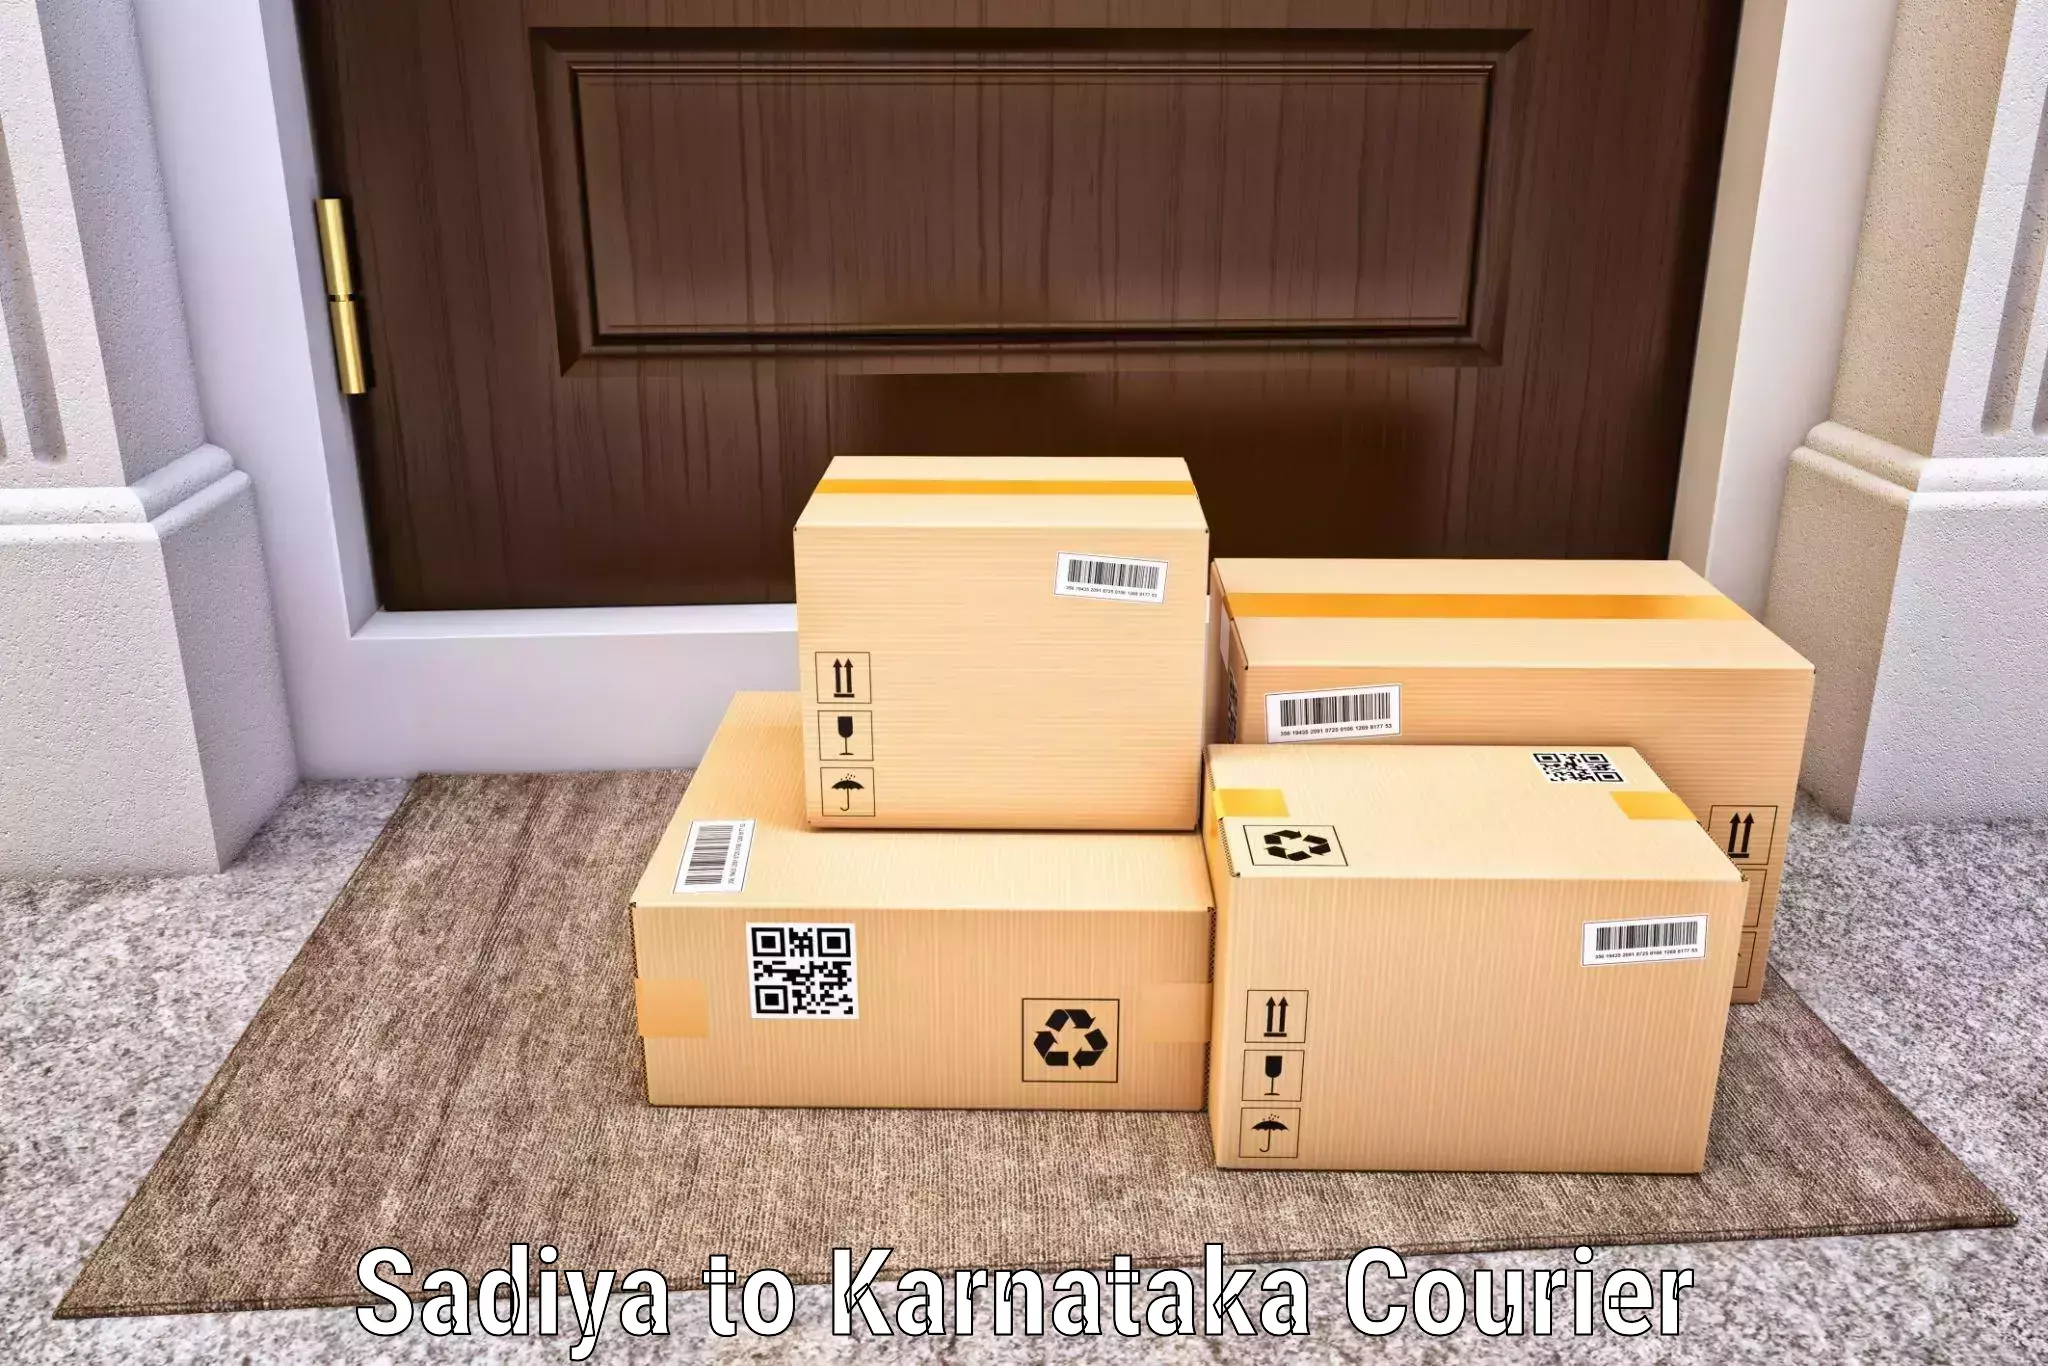 Easy return solutions Sadiya to Banavara